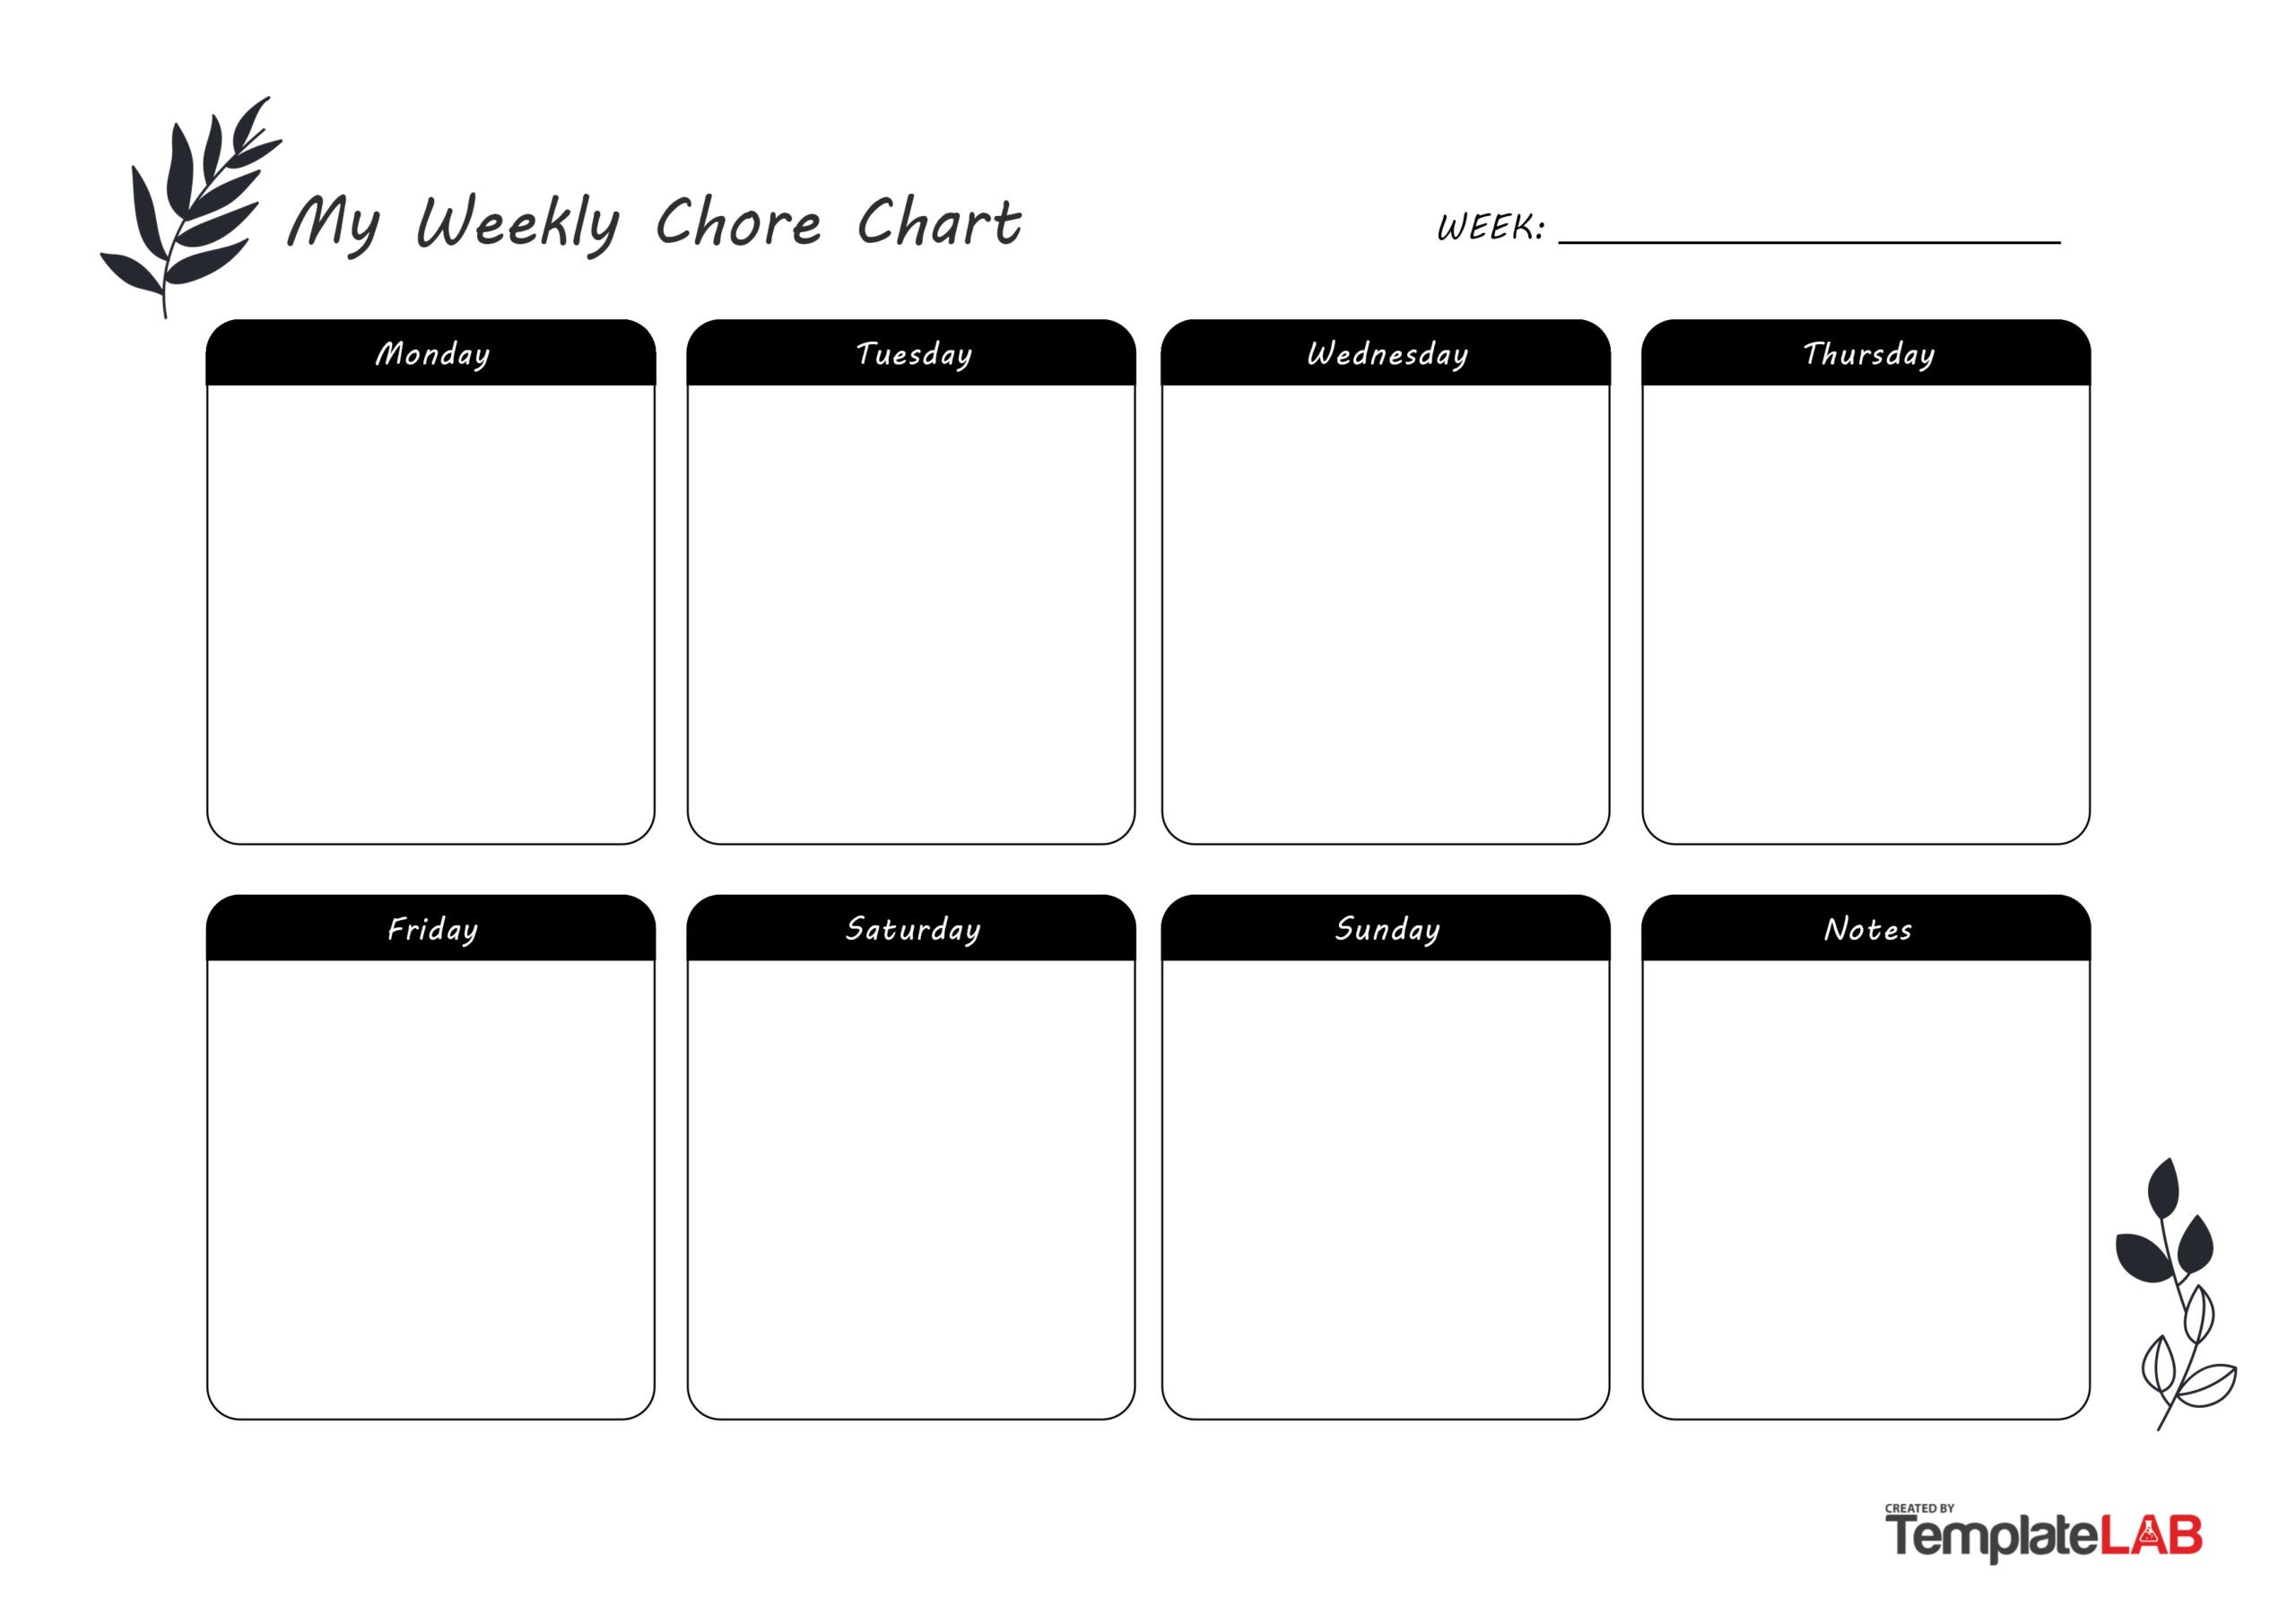 Free Weekly Chore Chart v2